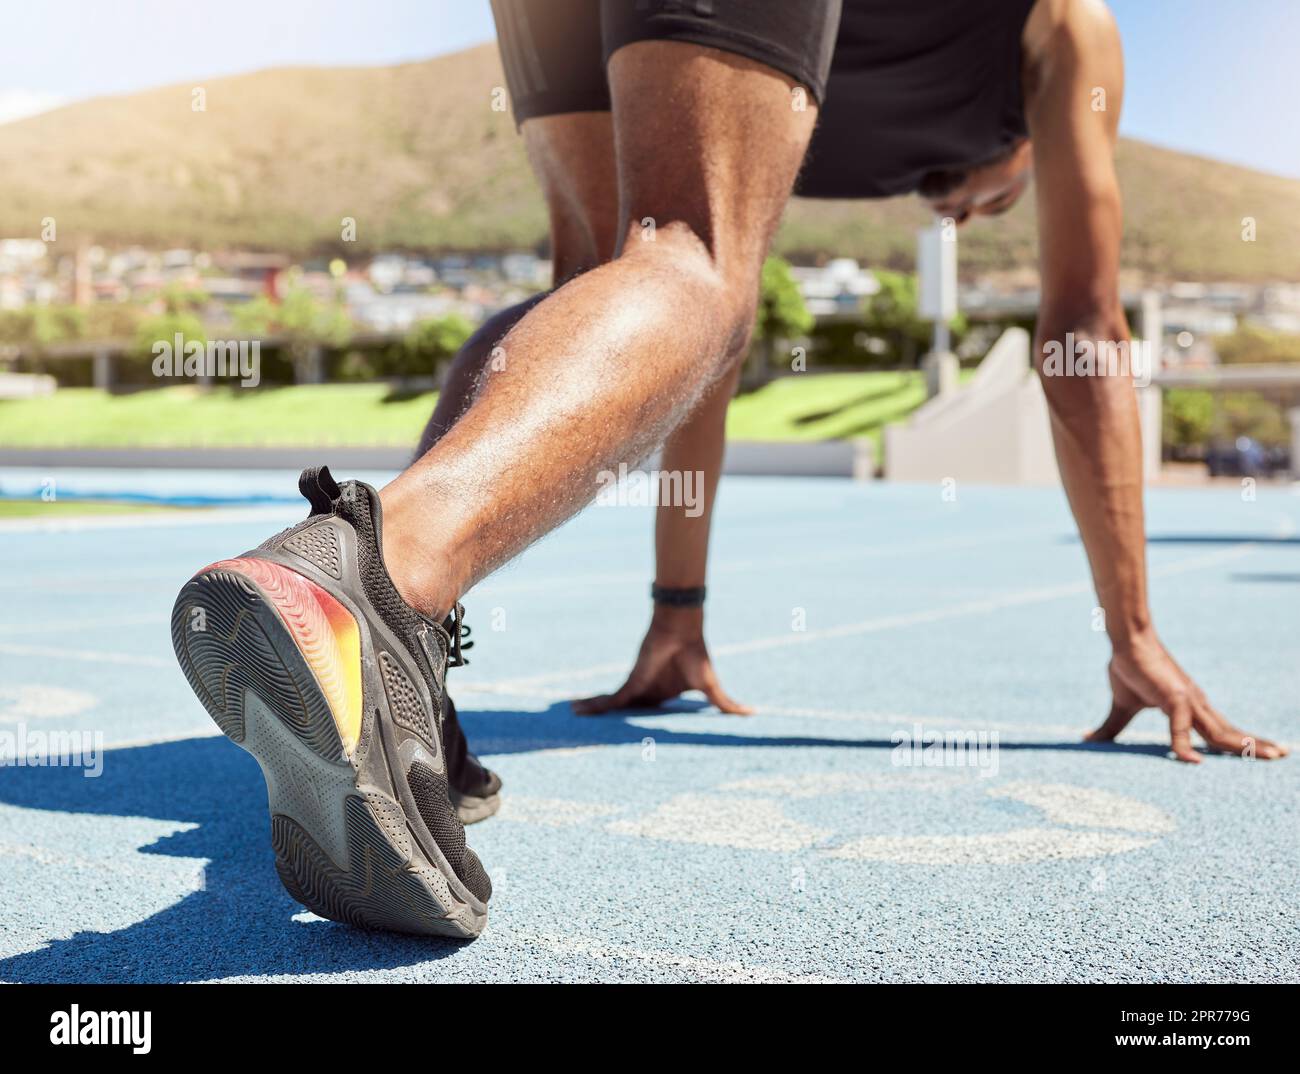 Nahaufnahme eines Athleten, der sich auf Leichtathletik und Leichtathletik vorbereitet, mit seinen Füßen auf Startblöcken, bereit für das Sprinten. Nahaufnahme eines Mannes in Startposition für ein Rennen auf einer Sportstrecke Stockfoto